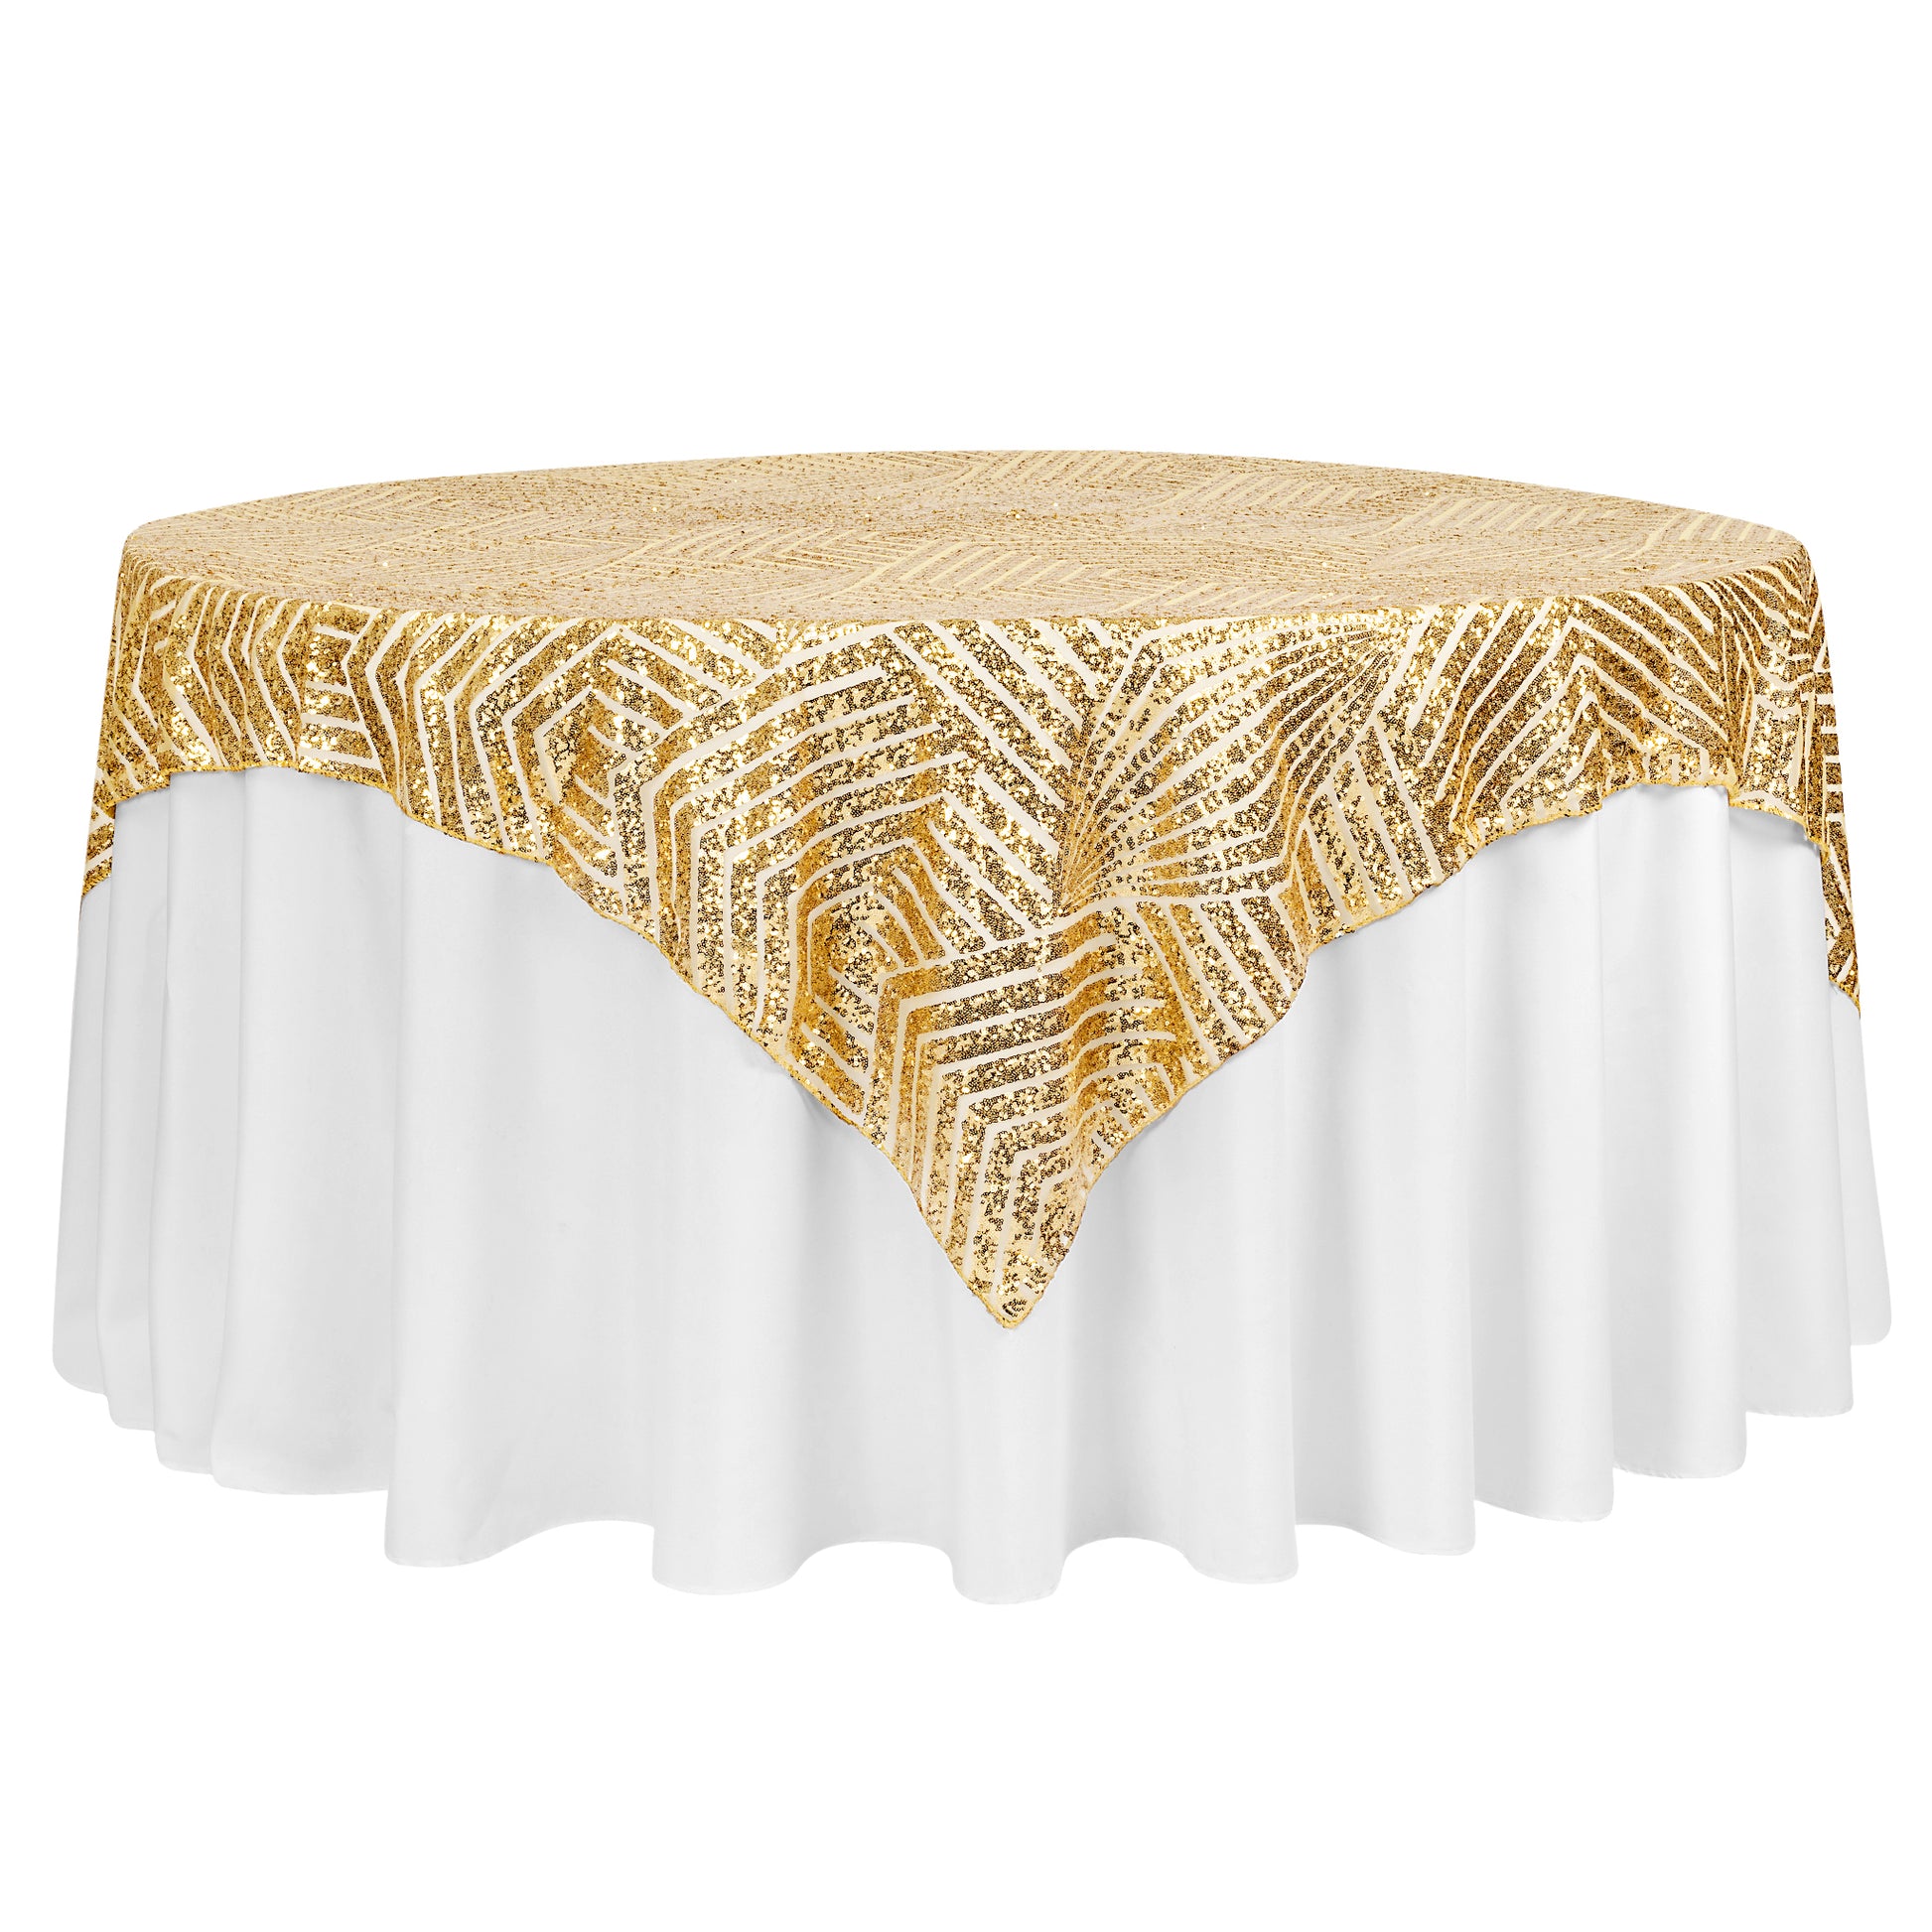 Geometric Glitz Art Deco Sequin Table Overlay Topper 72"x72" Square - Gold - CV Linens